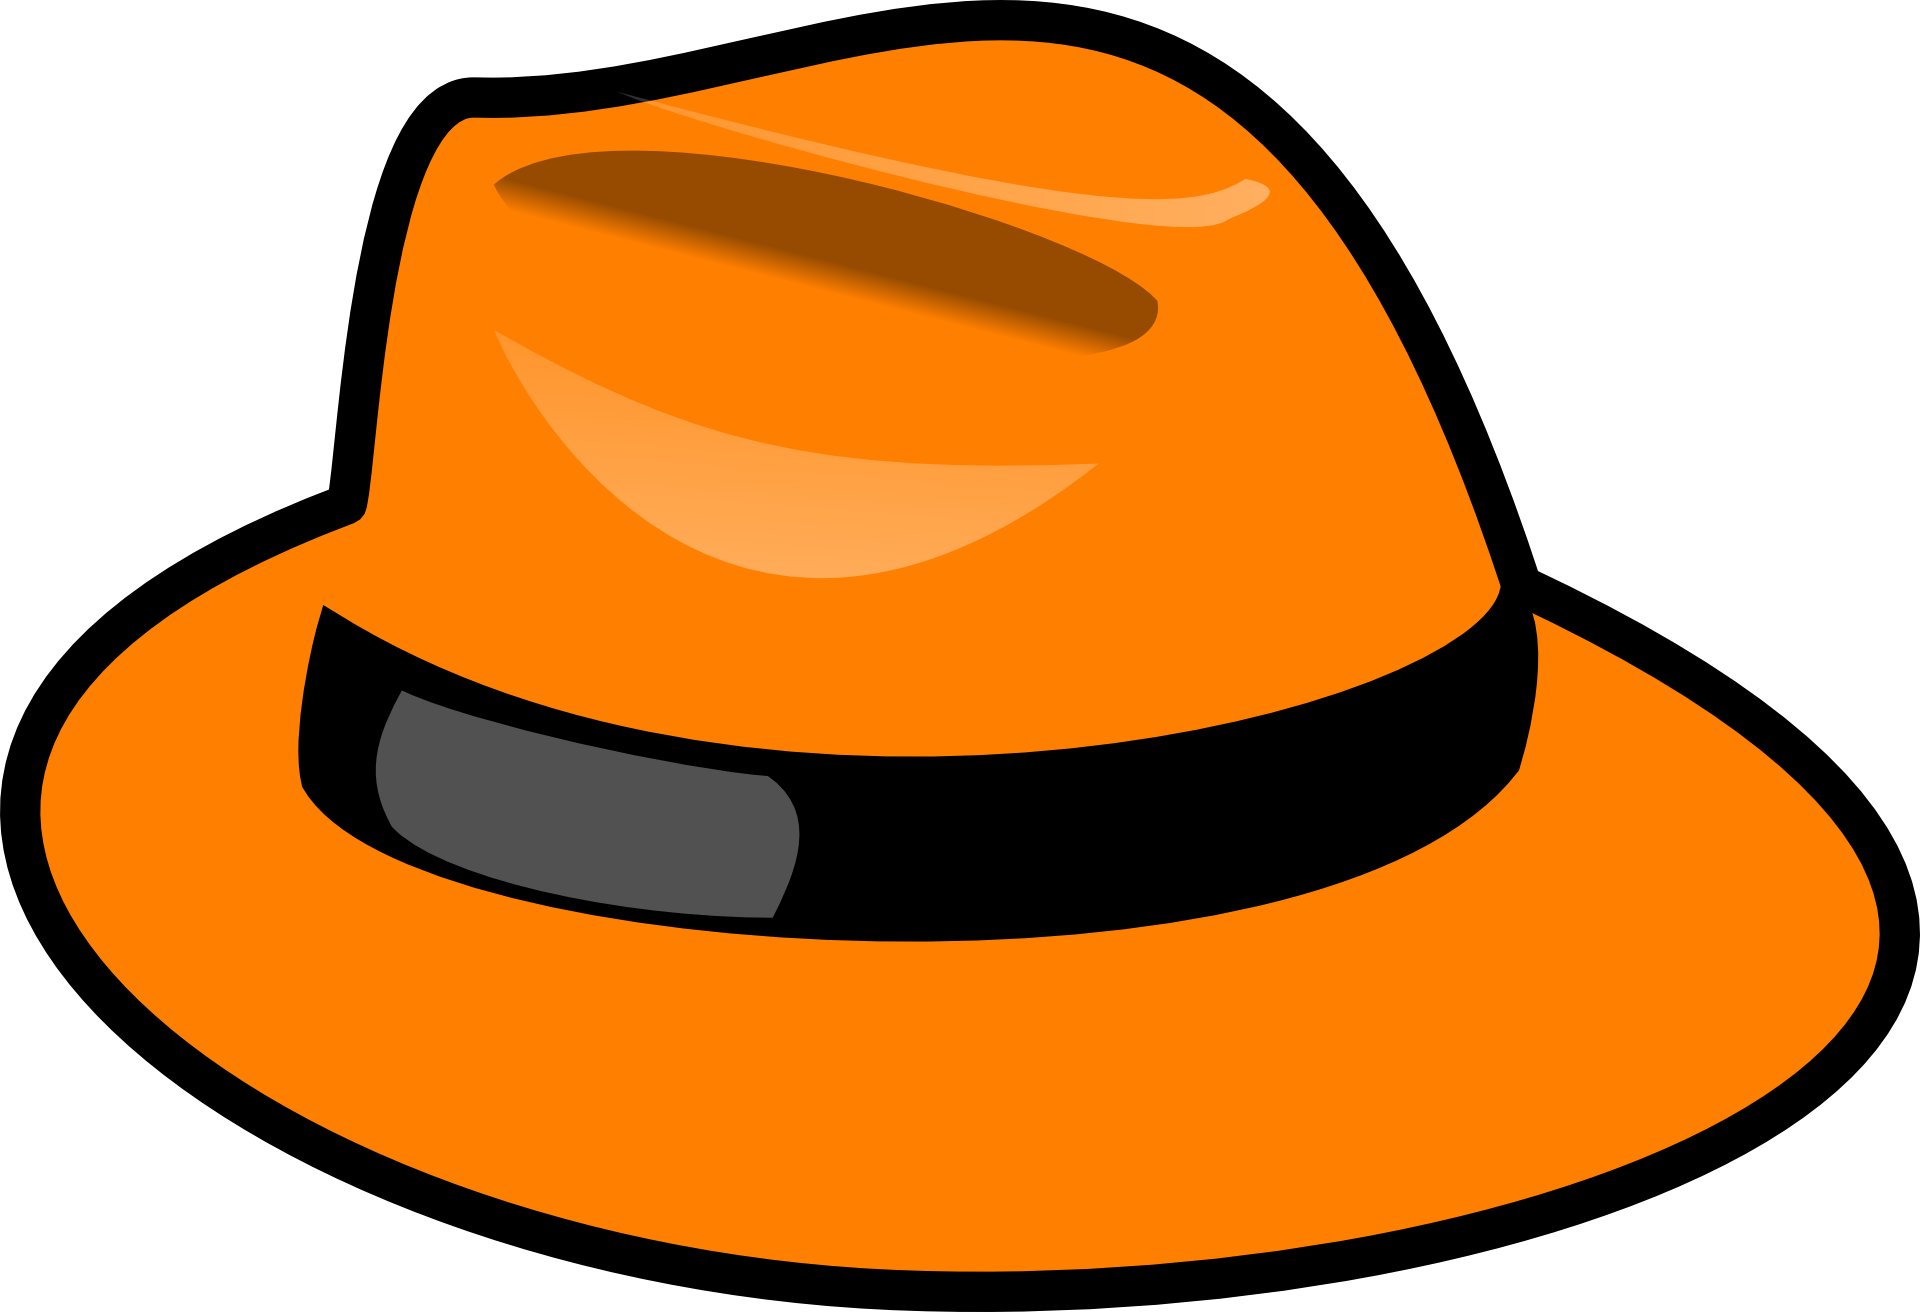 Leben hat. Шляпы мультяшные. Мультяшные шляпки. Шляпа оранжевая. Шляпа рисунок.